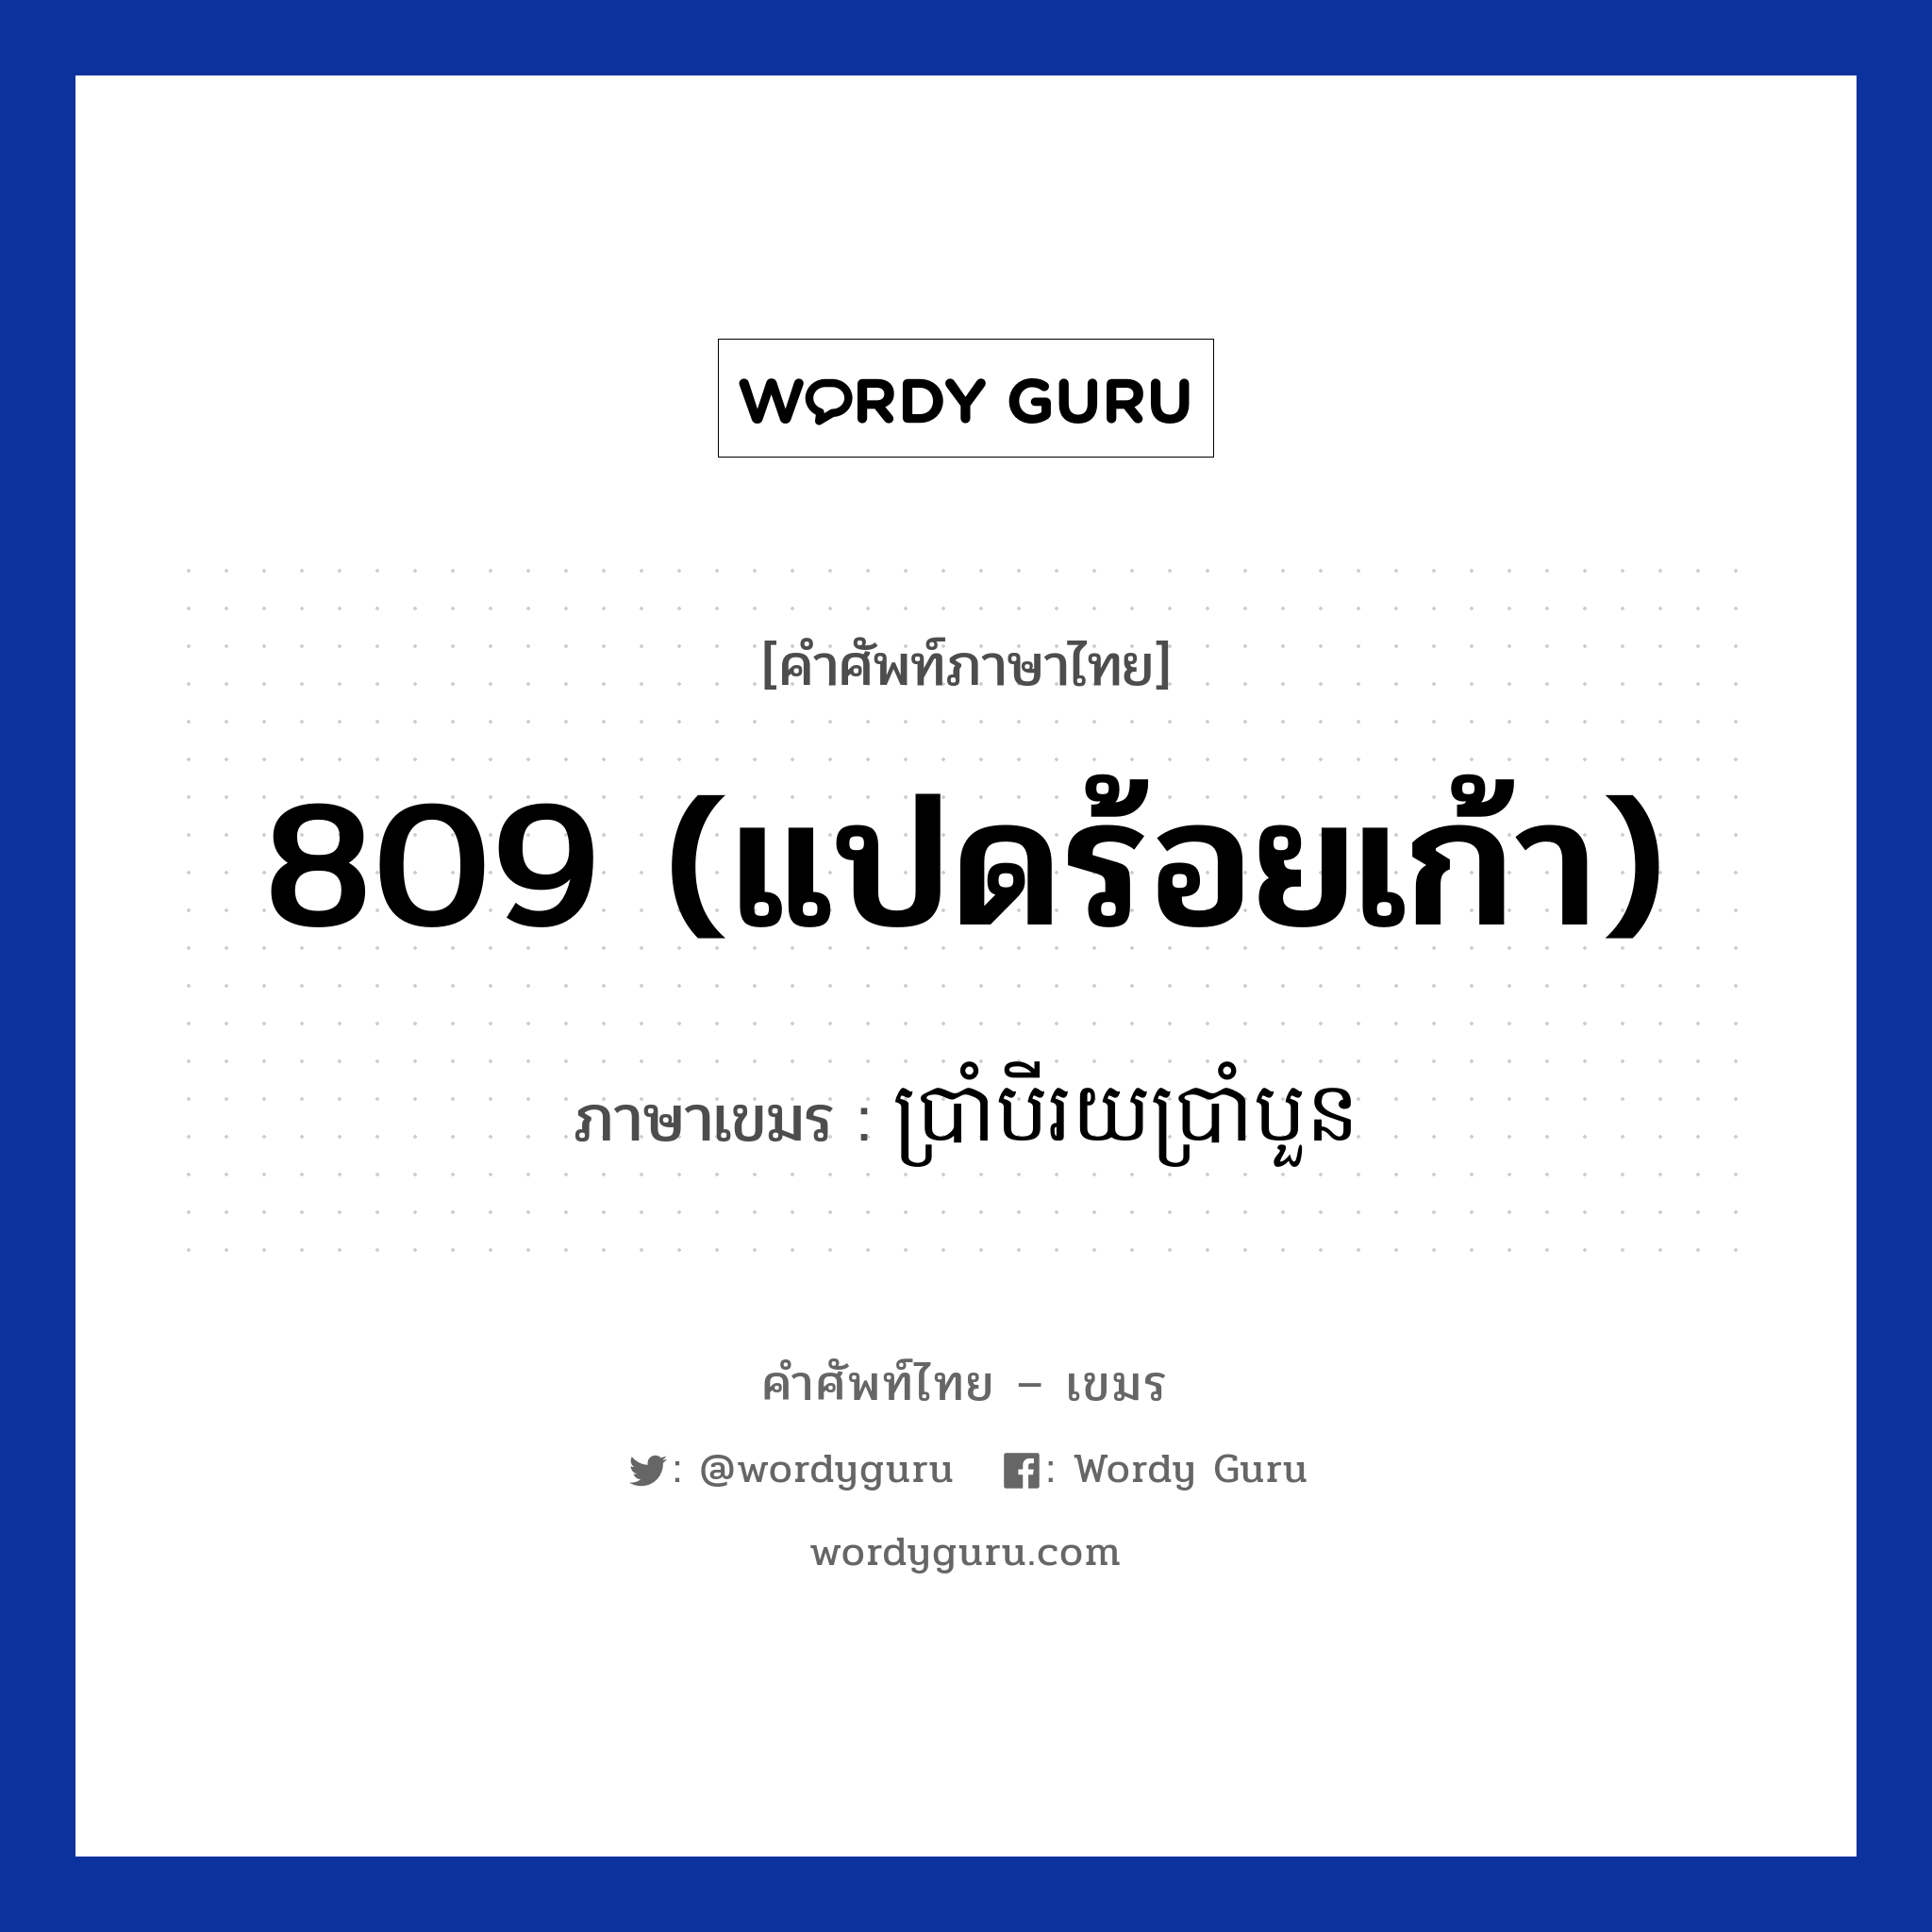 809 (แปดร้อยเก้า) ภาษาเขมรคืออะไร, คำศัพท์ภาษาไทย - เขมร 809 (แปดร้อยเก้า) ภาษาเขมร ប្រាំបីរយប្រាំបួន หมวด การนับเลข Brambeiroybramboun หมวด การนับเลข